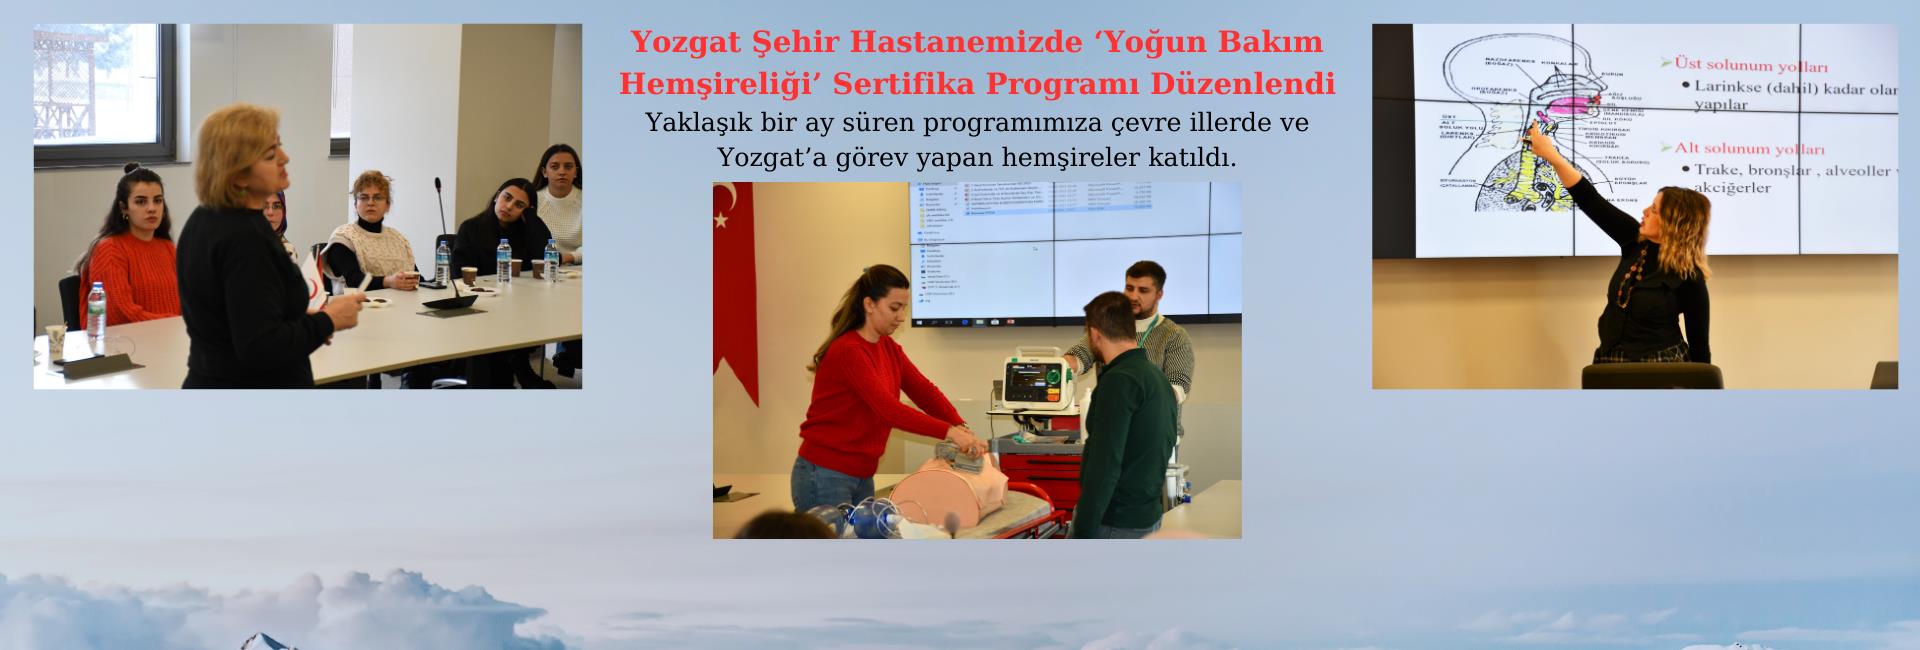 Yozgat Şehir Hastanemizde ‘Yoğun Bakım Hemşireliği’ Sertifika Programı Düzenlendi